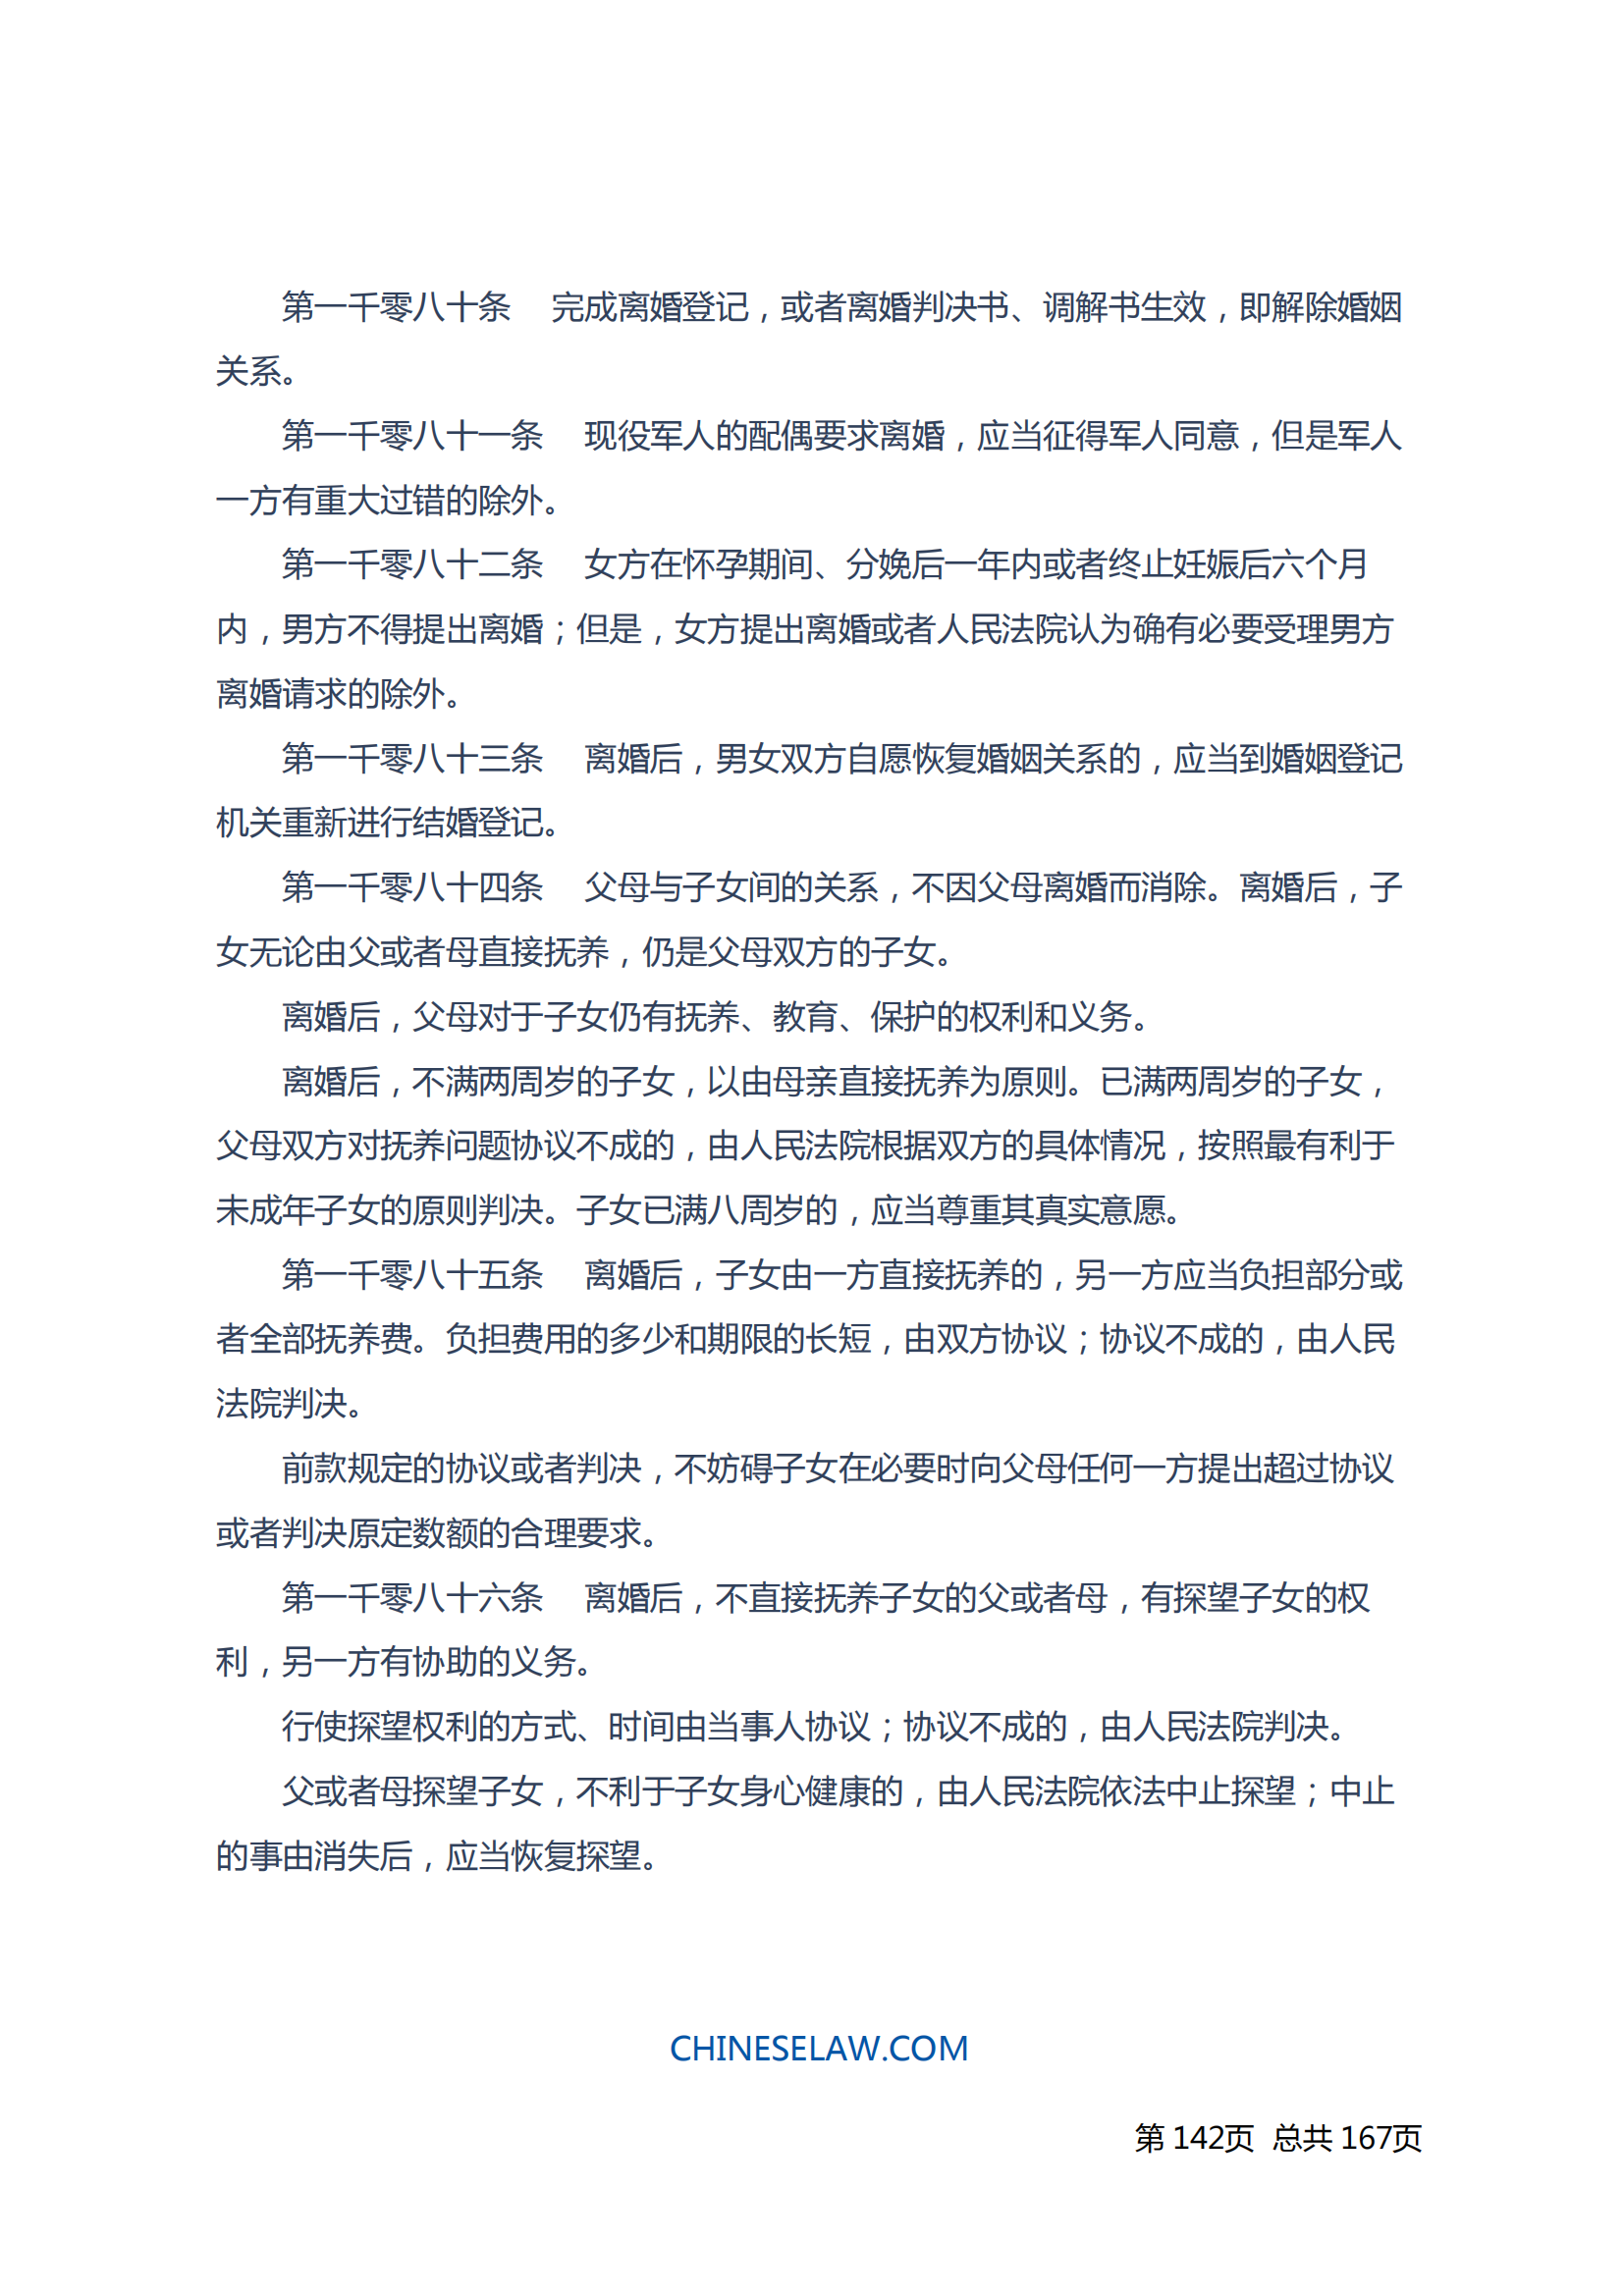 中华人民共和国民法典_141